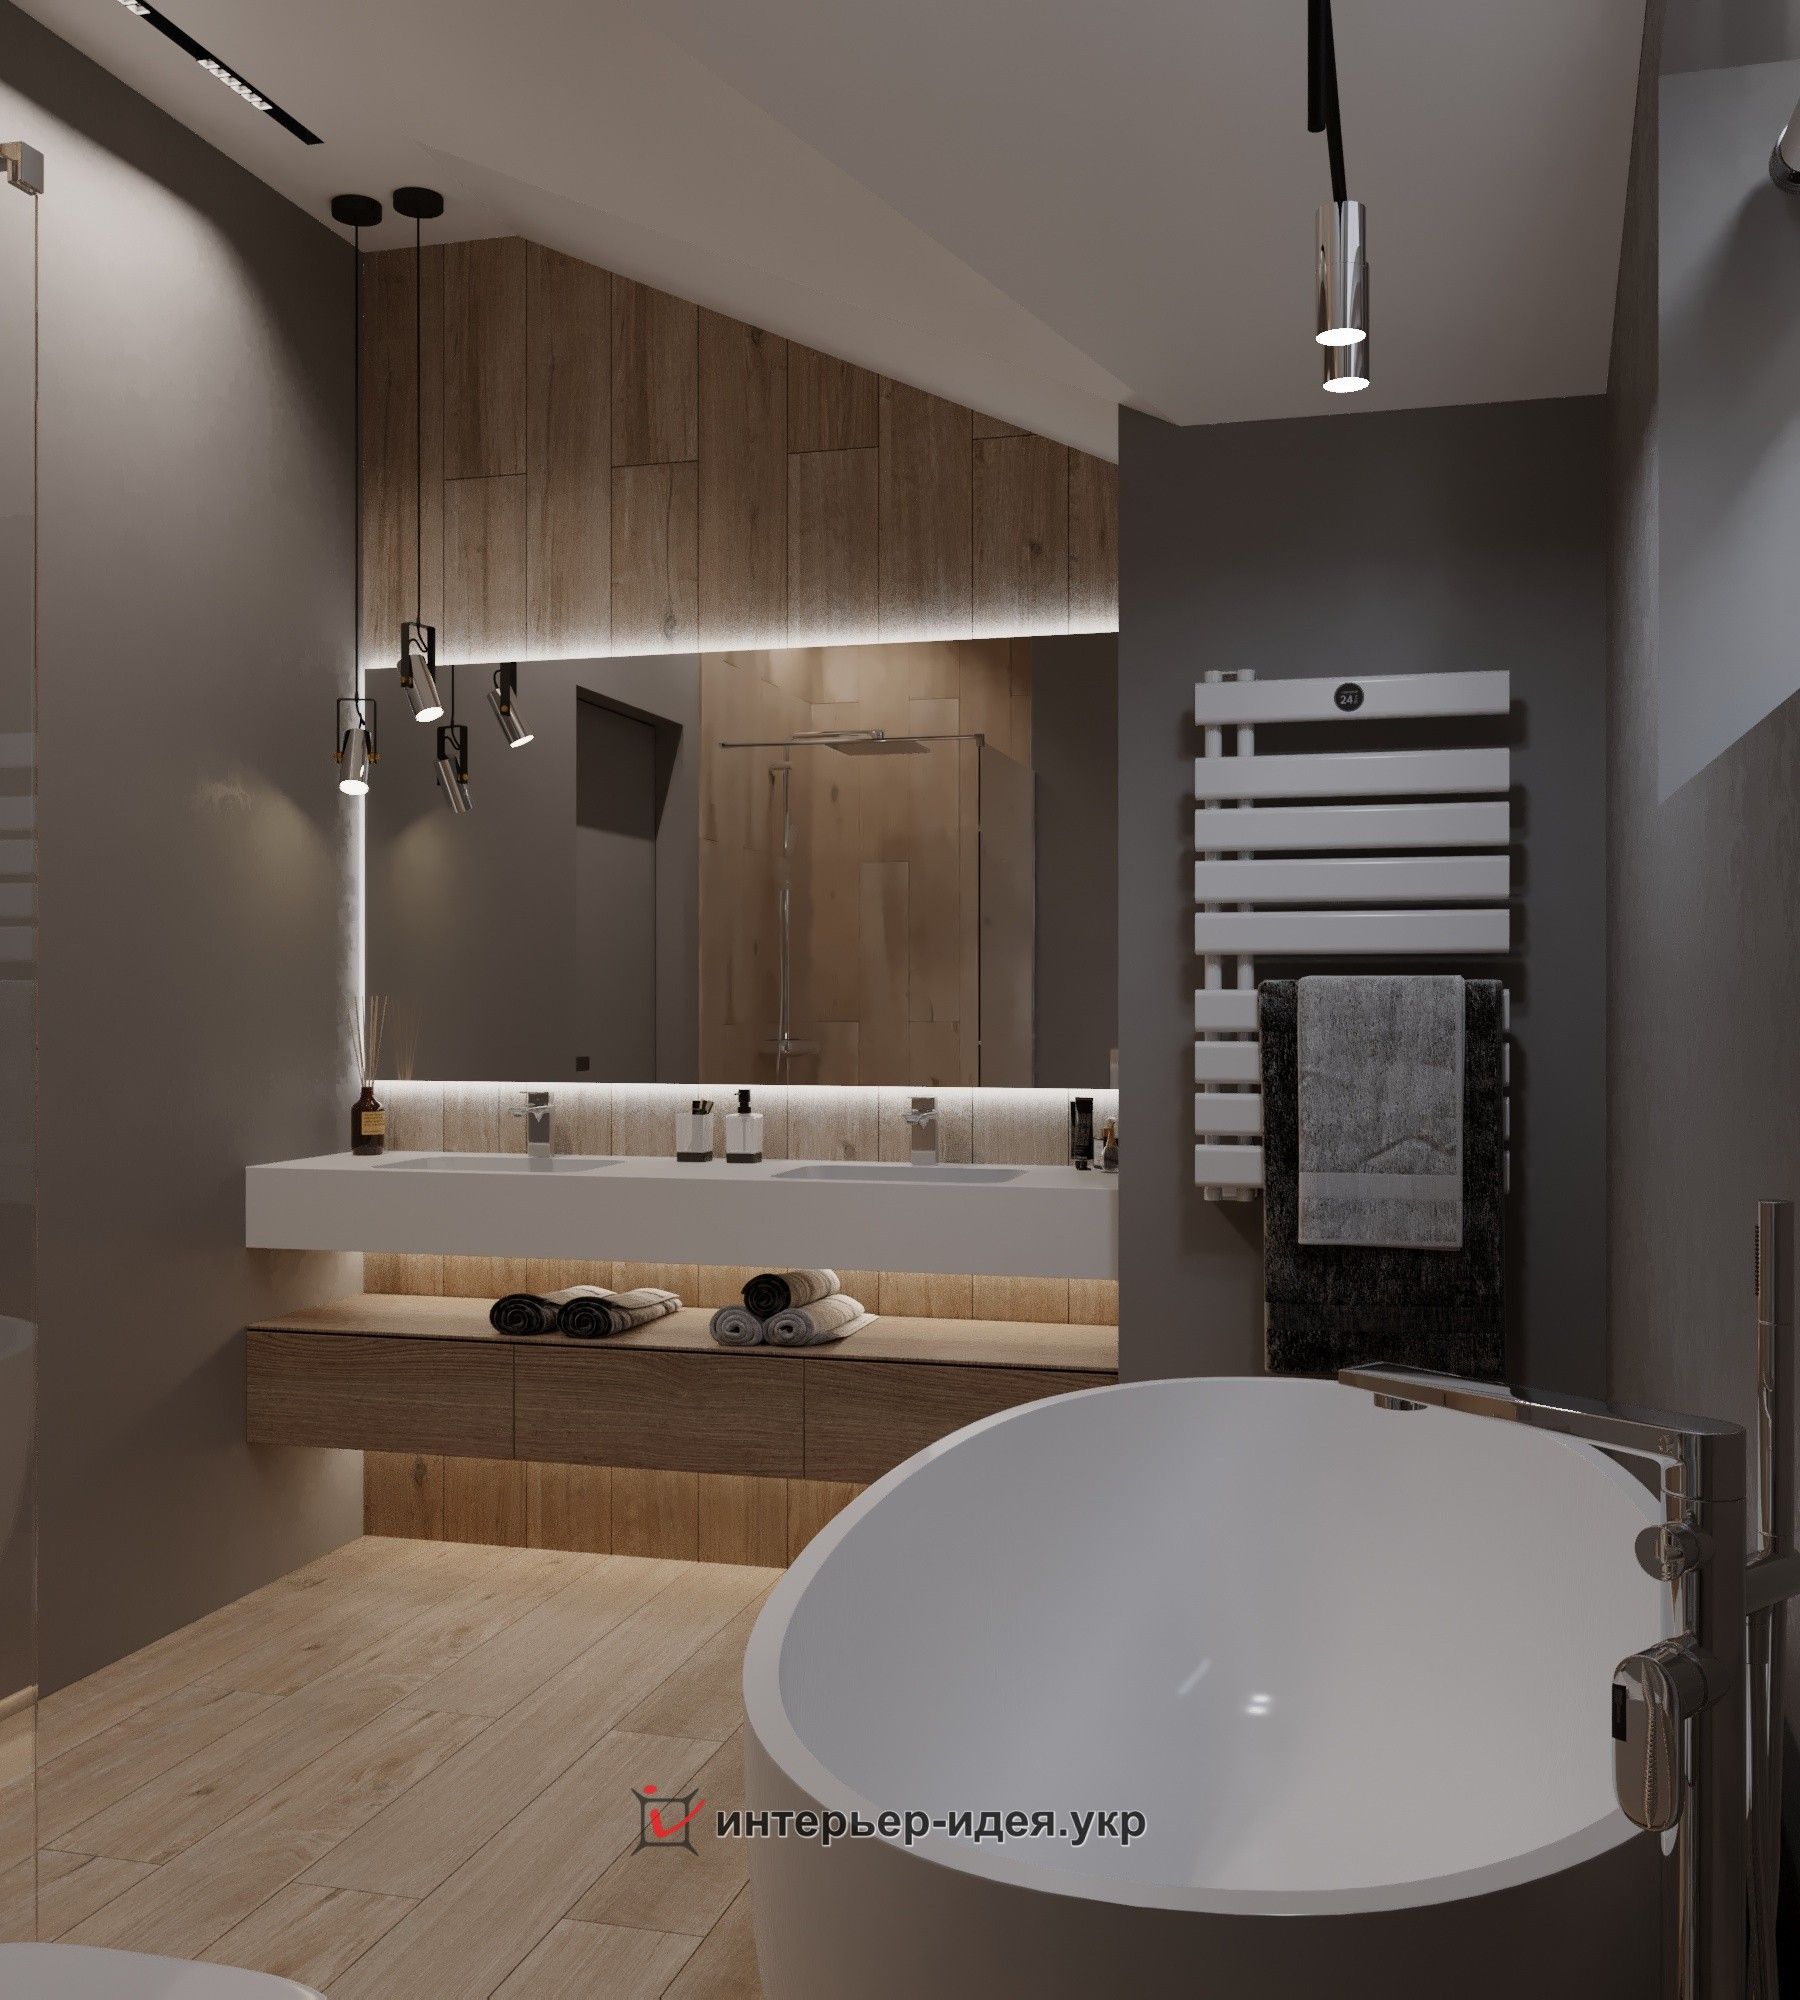 Заказать индивидуальные дизайн-проекты ванной комнаты